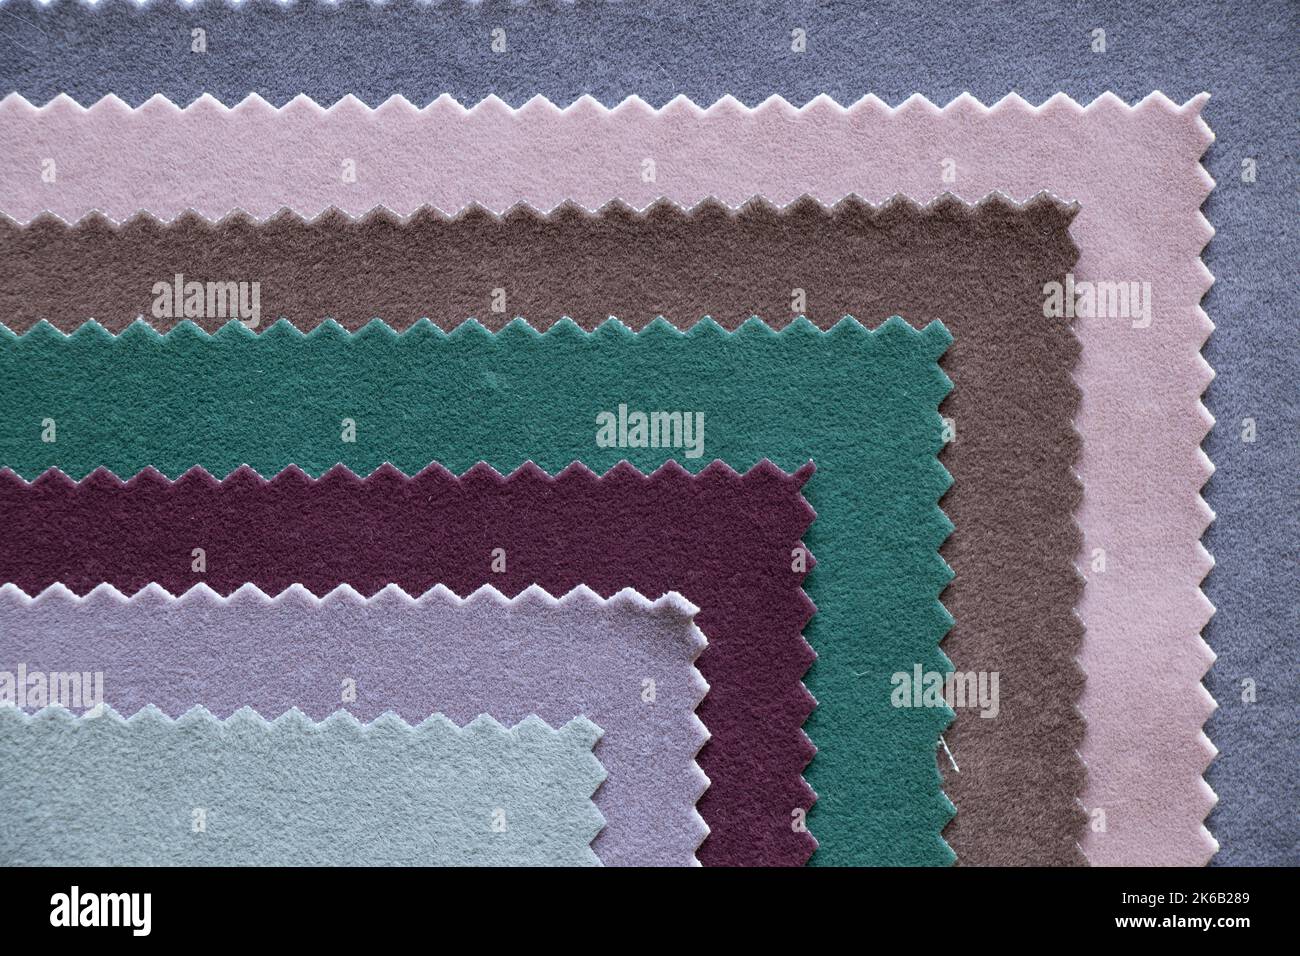 Une palette de tissu doux en velours dans différentes couleurs pour le rembourrage de meubles comme un arrière-plan, tissu de mode pour les backdrops Banque D'Images